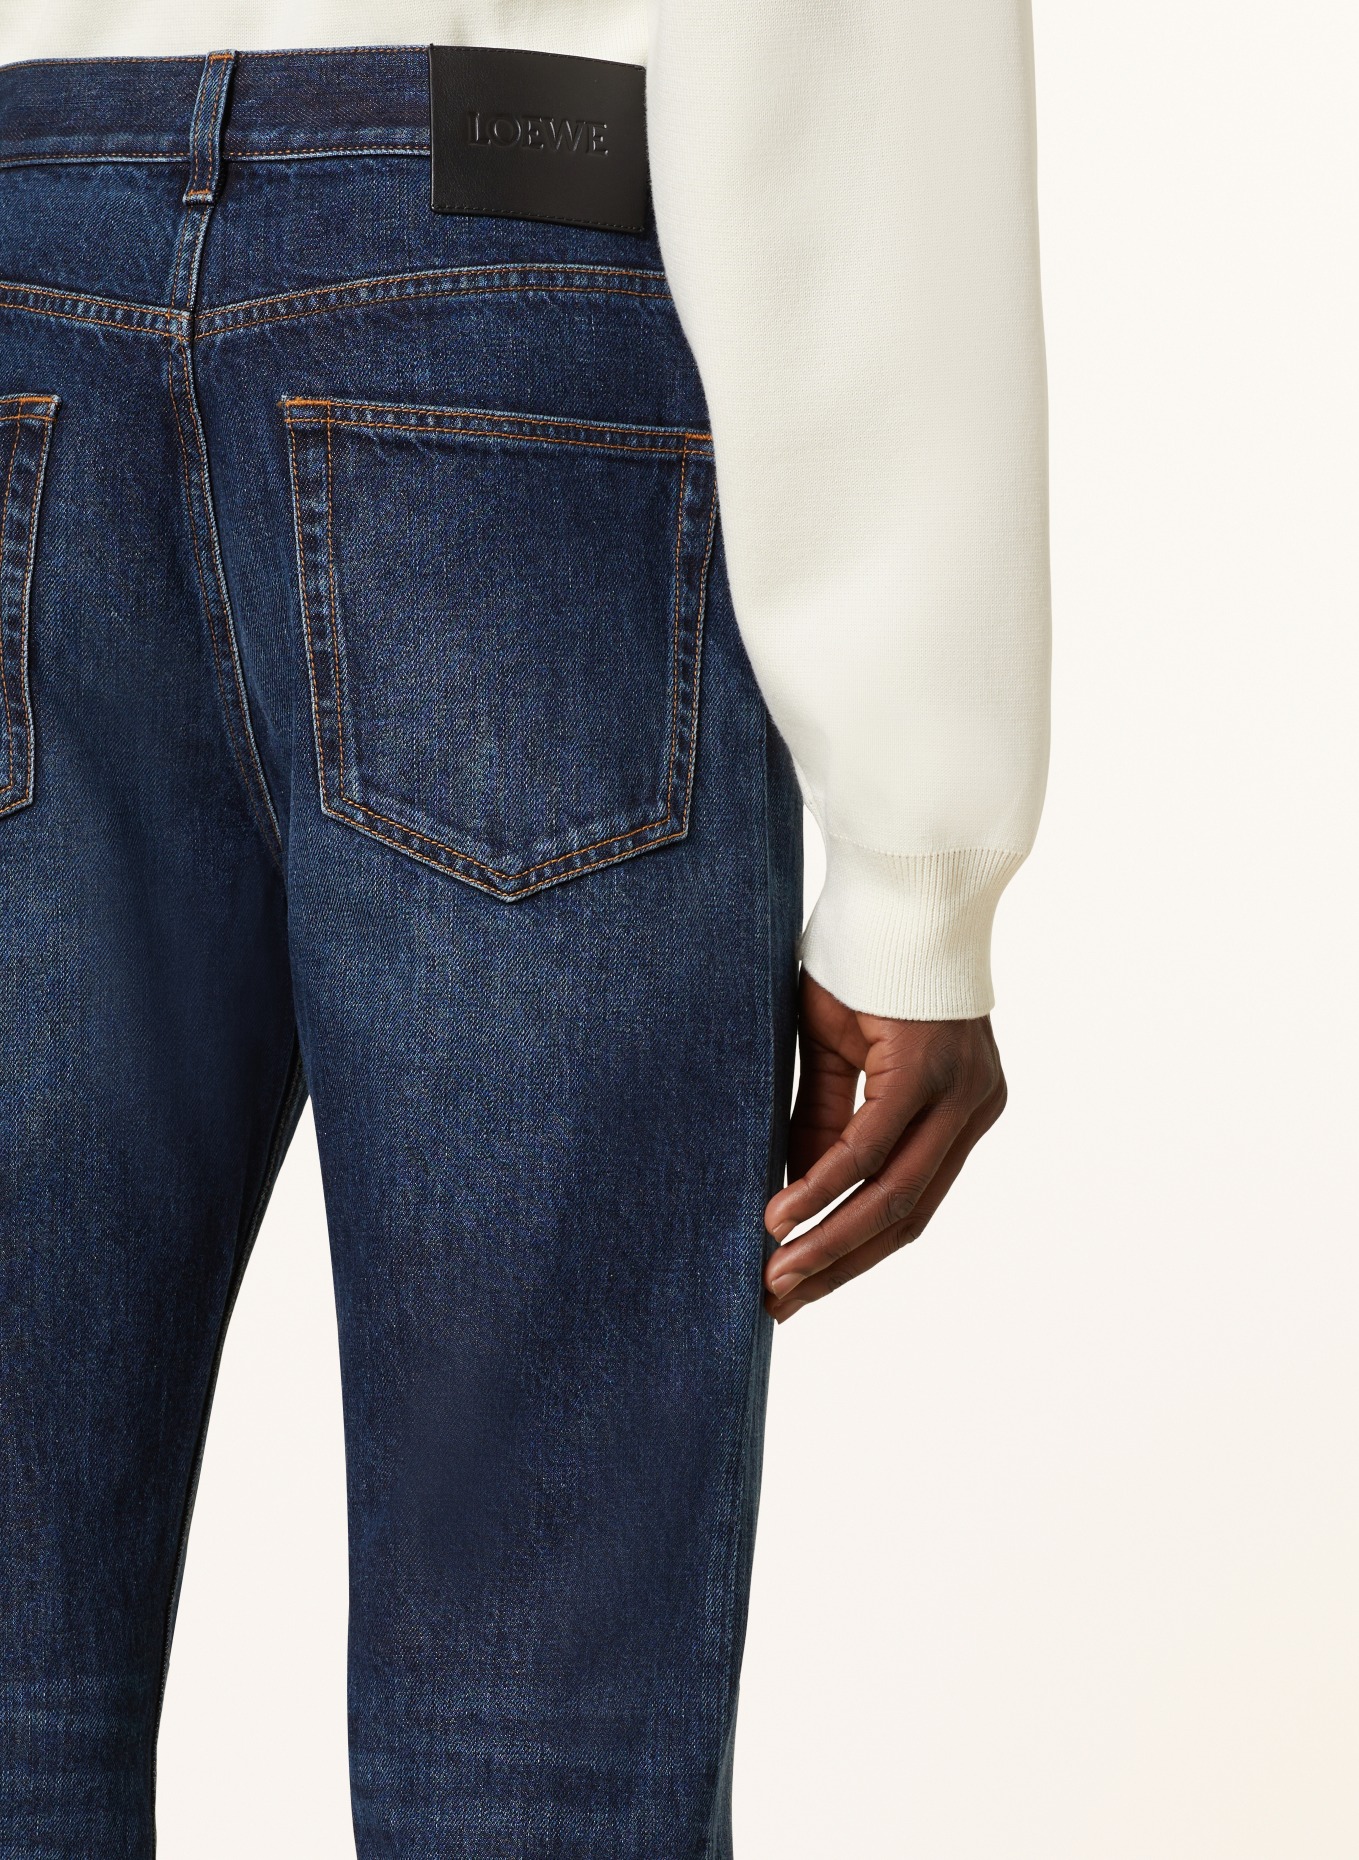 LOEWE Jeans FISHERMAN TURN UP Regular Fit, Farbe: 8383 WASHED INDIGO (Bild 6)